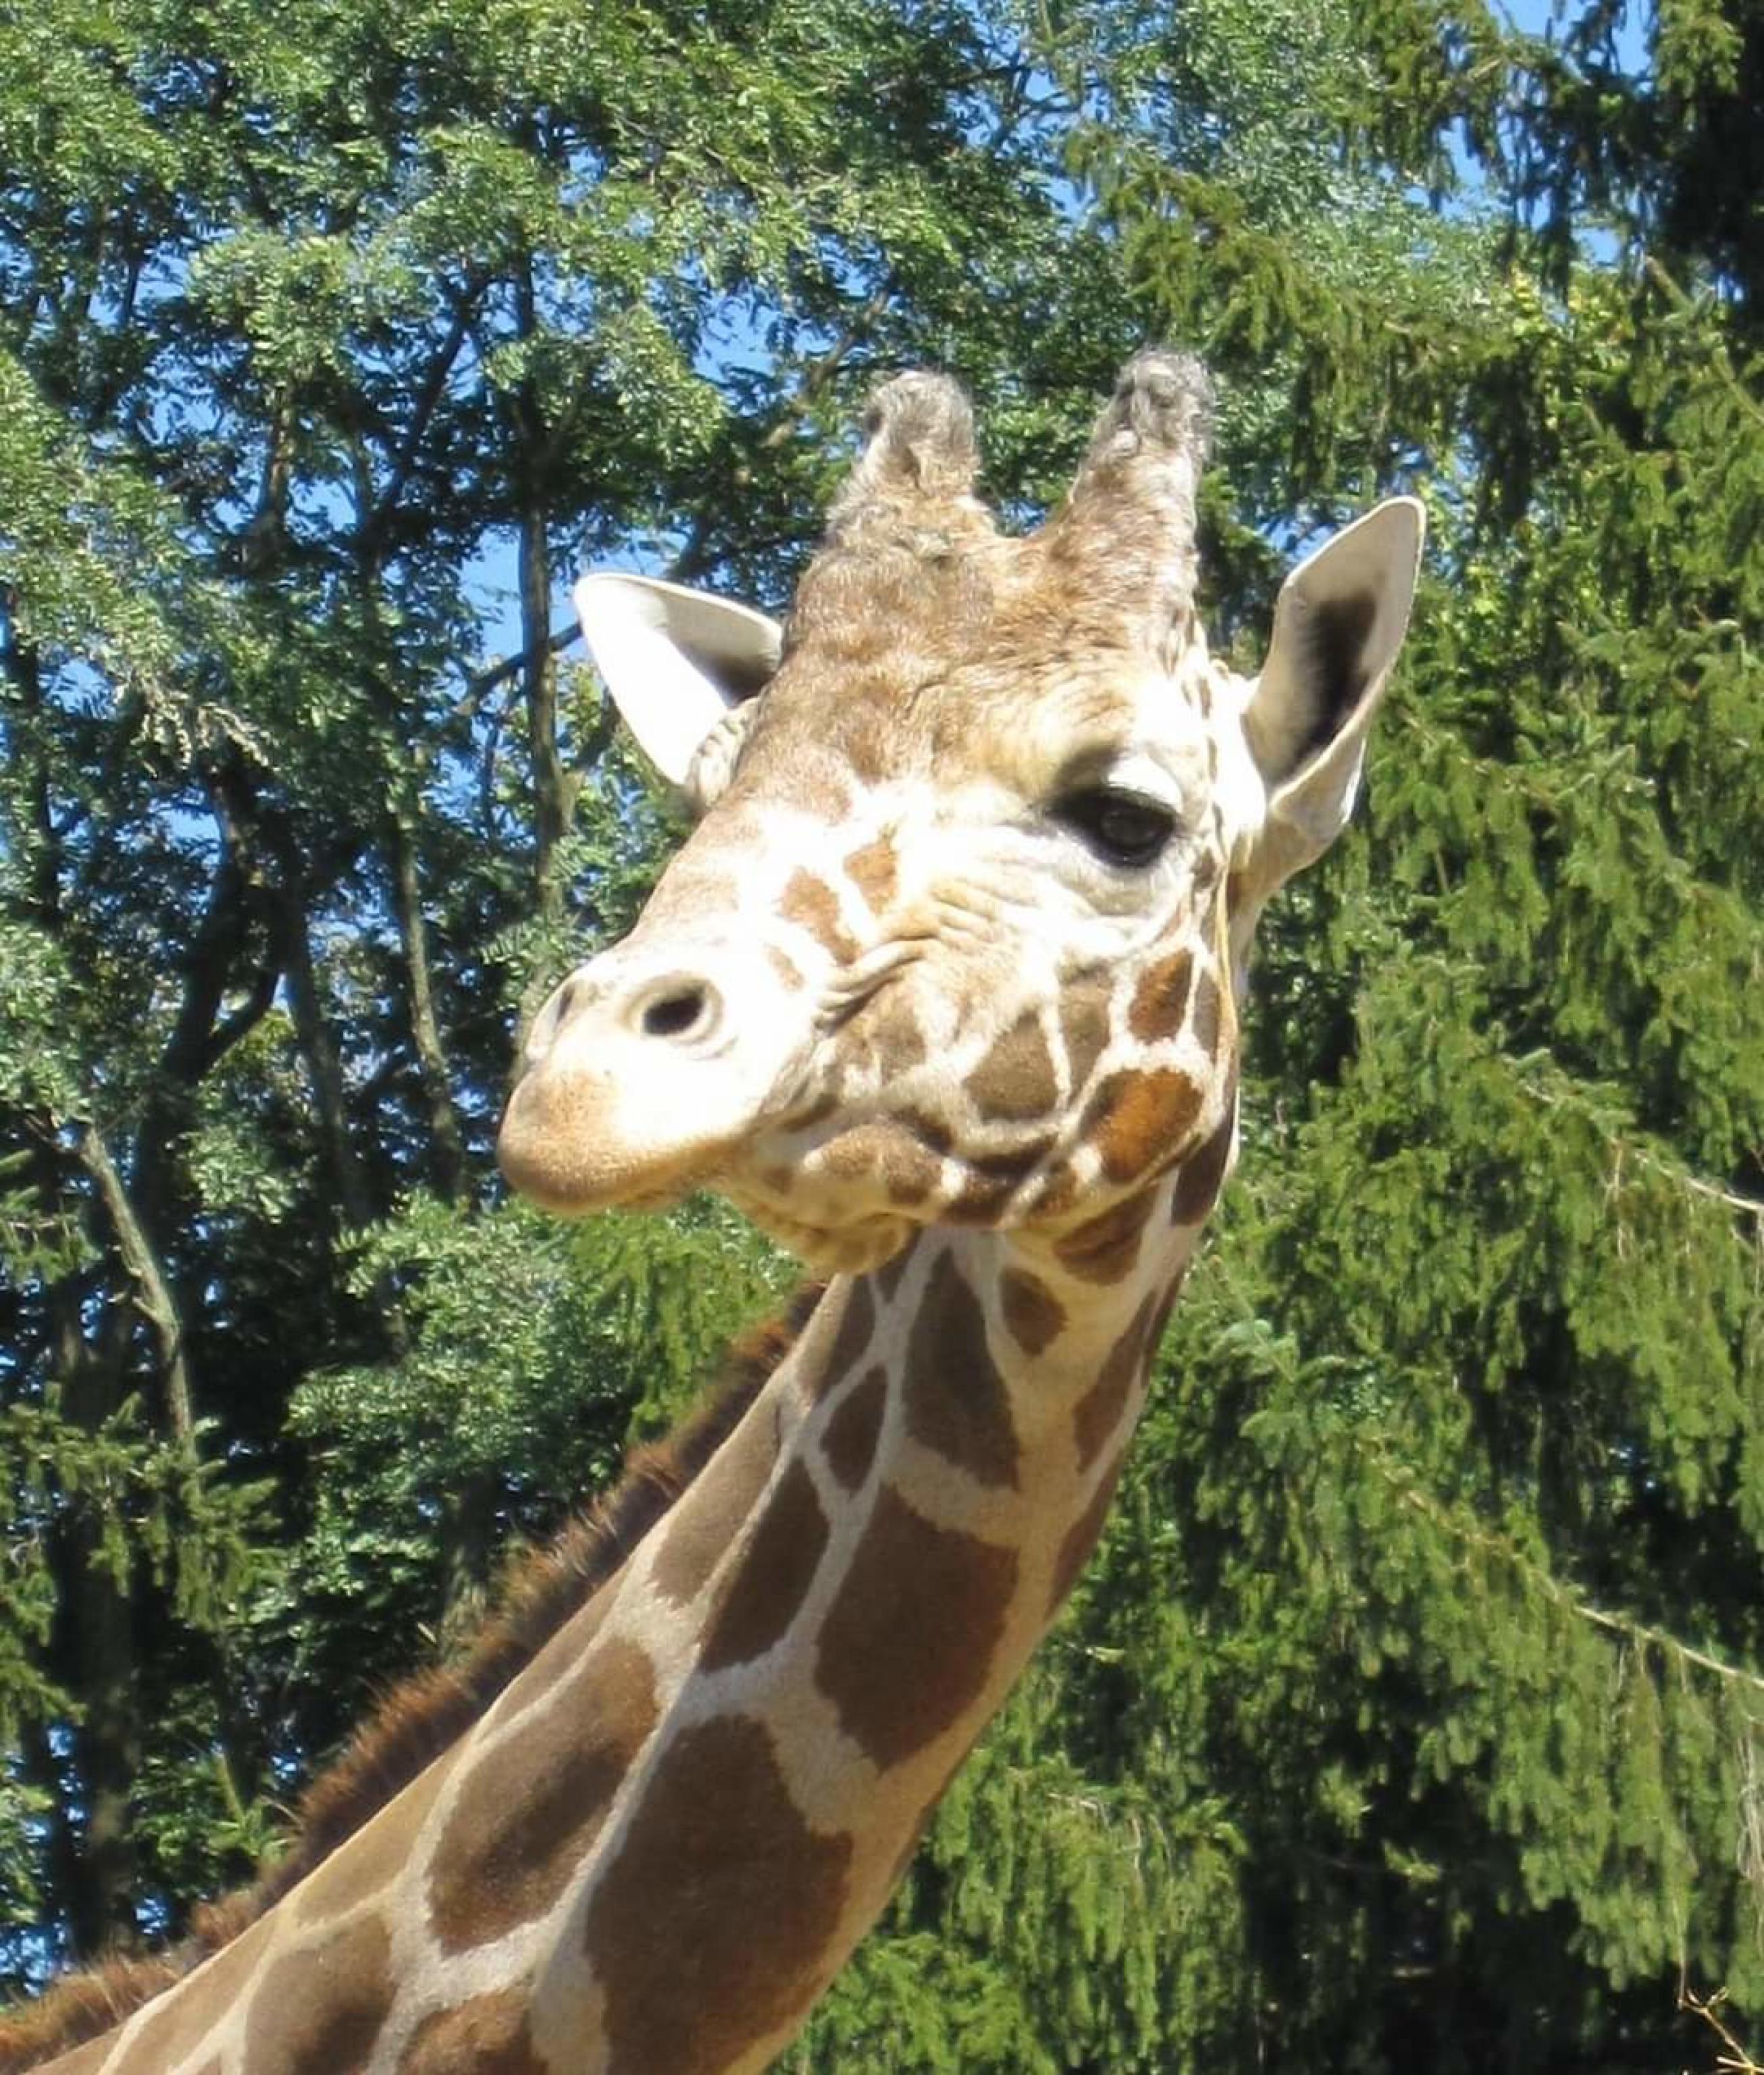 I funzionari dello zoo di Plumpton Park a Rising Sun, nel Maryland, hanno comunicato al mondo che il ventiseienne "Jimmie ", la giraffa maschio più vecchia del mondo, è stata sottoposta a eutanasia dopo che le condizioni degli zoccoli e delle gambe erano peggiorate. Lo riportano i media internazionali. Lo zoo ha affermato che prima di arrivare alla decisione avevano consultato veterinari di tutto il Paese e esplorate tutte le possibili opzioni di trattamento. FACEBOOK PLUMPTON PARK ZOO +++ ATTENZIONE LA FOTO NON PUO' ESSERE PUBBLICATA O RIPRODOTTA SENZA L'AUTORIZZAZIONE DELLA FONTE DI ORIGINE CUI SI RINVIA+++ ++HO NO SALES EDITORIAL USE ONLY +++